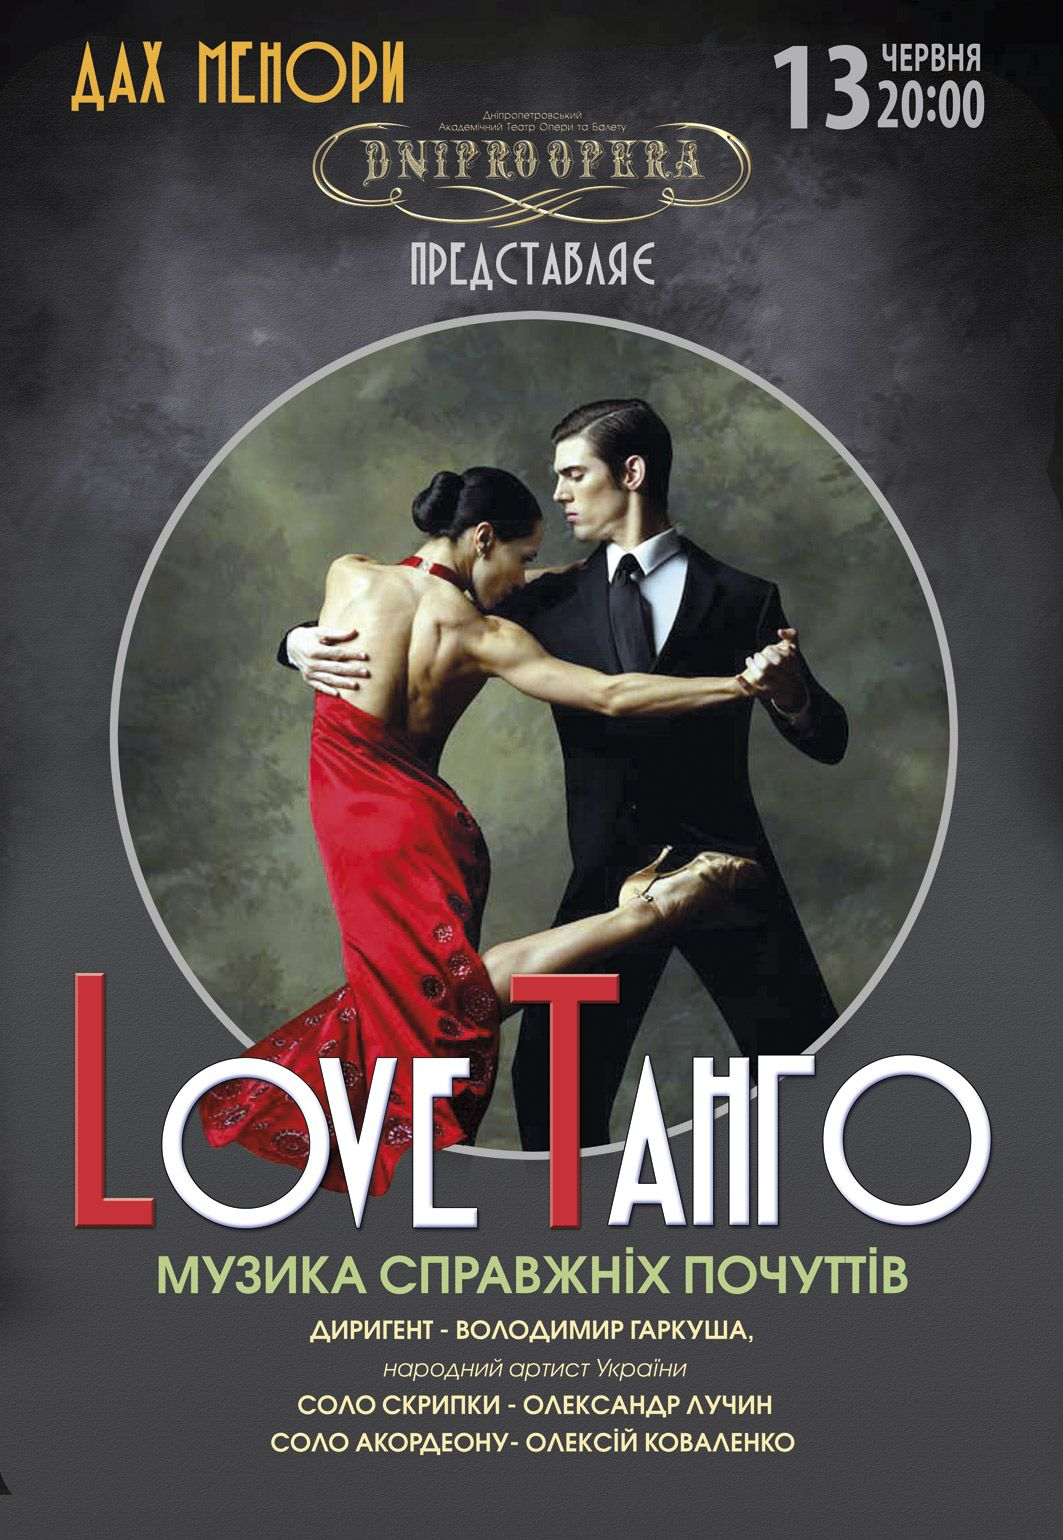 Love танго Днепр, 13.06.2021, купить билеты. Афиша Днепра